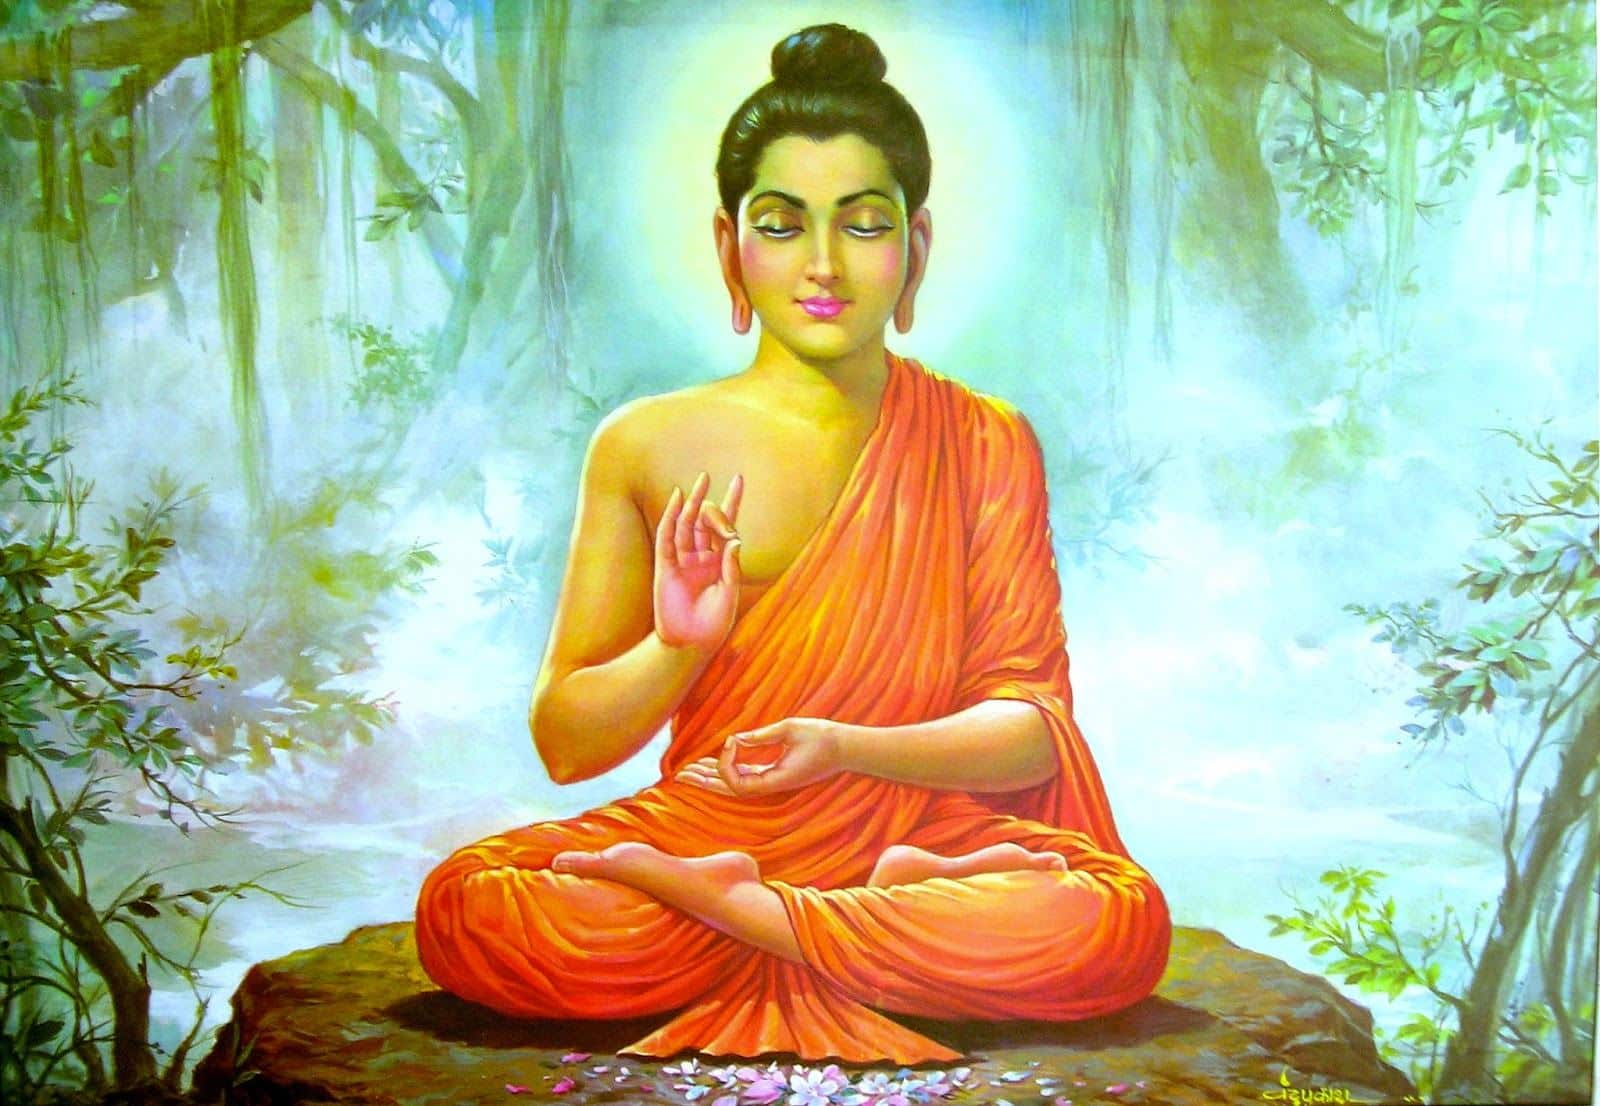 Chuẩn bị đón mừng ngày Đức Phật thành đạo (8-12 âm lịch)